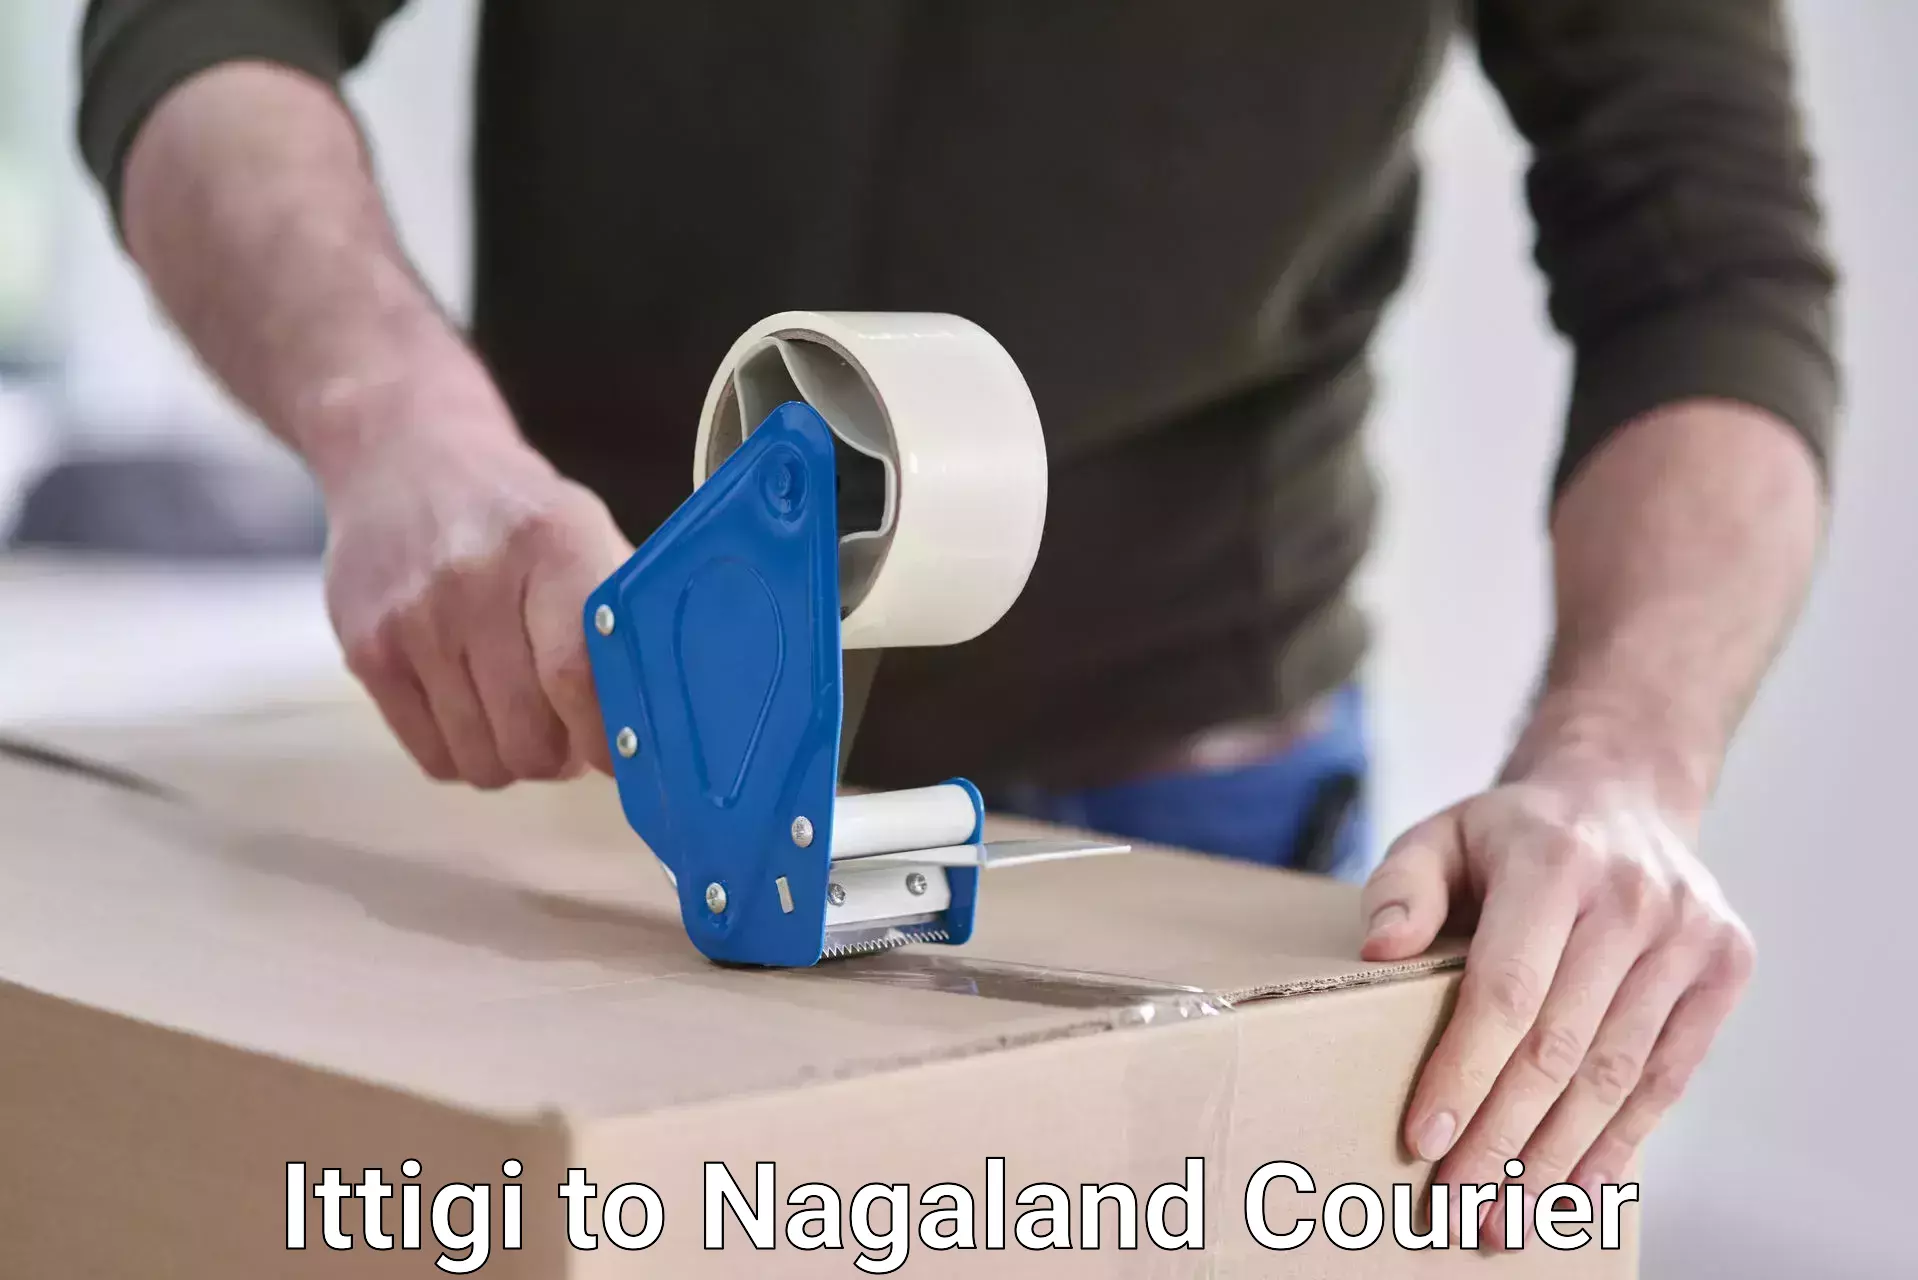 Courier service comparison Ittigi to Nagaland